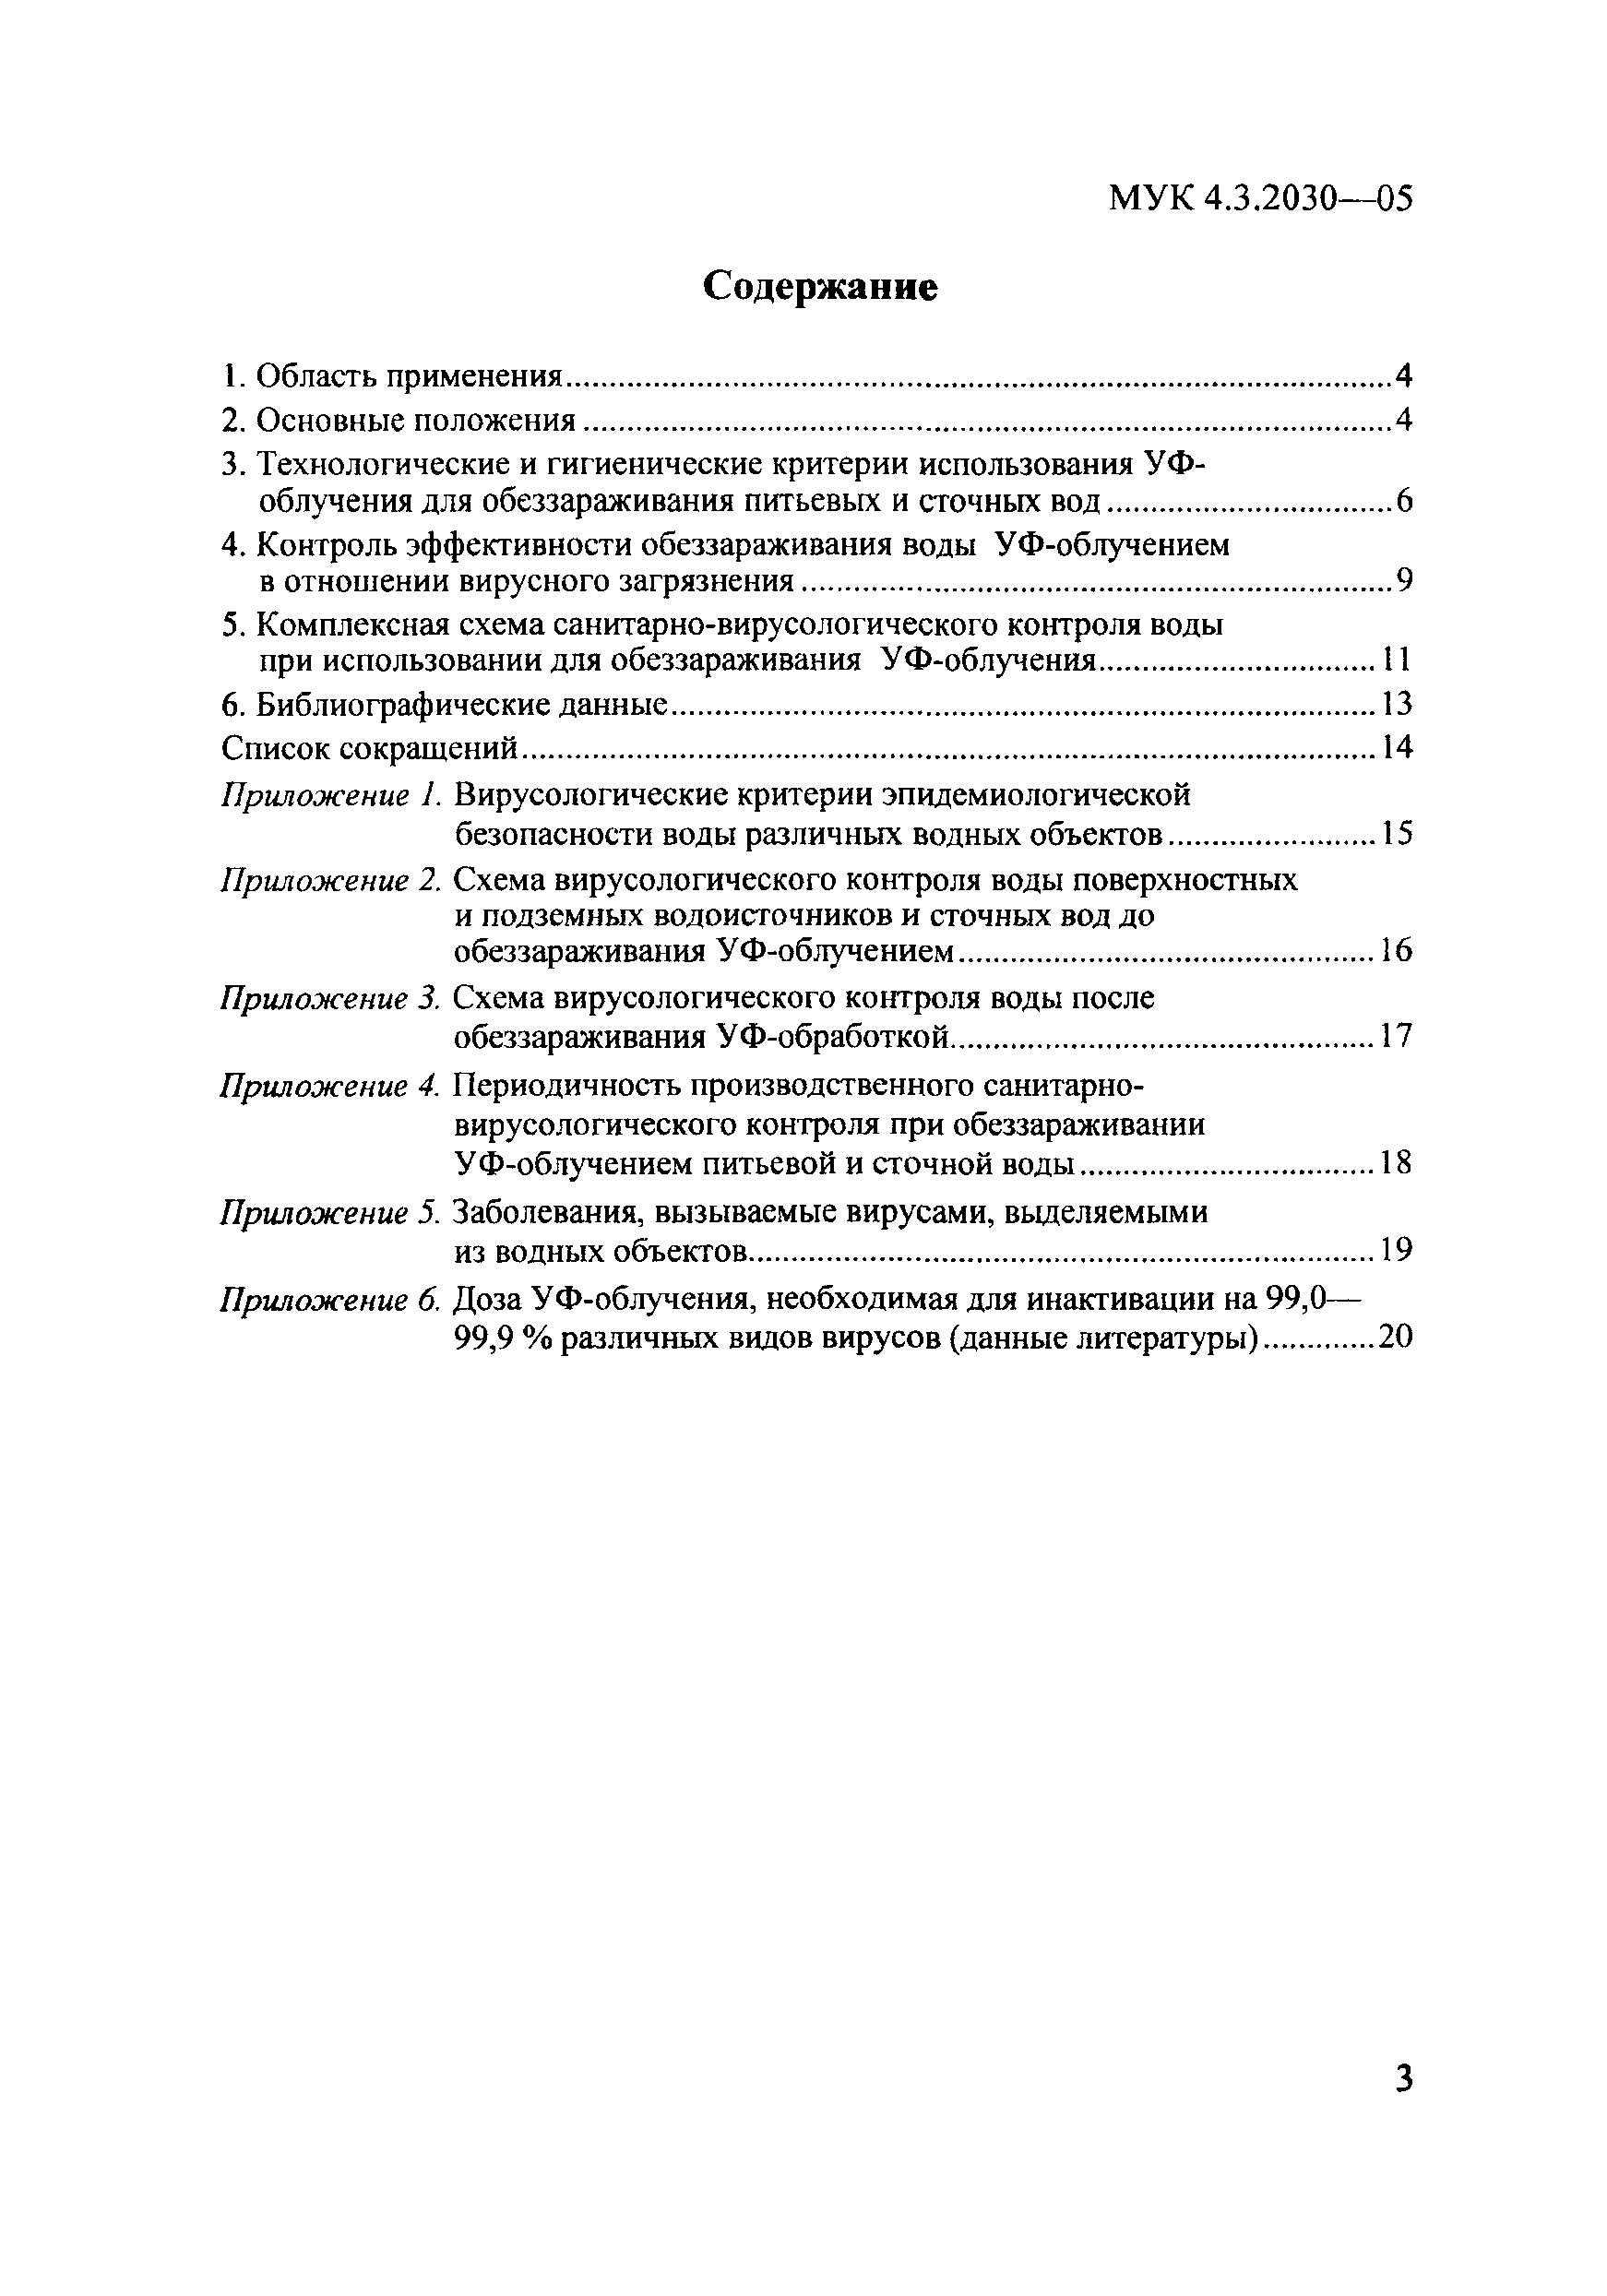 МУК 4.3.2030-05